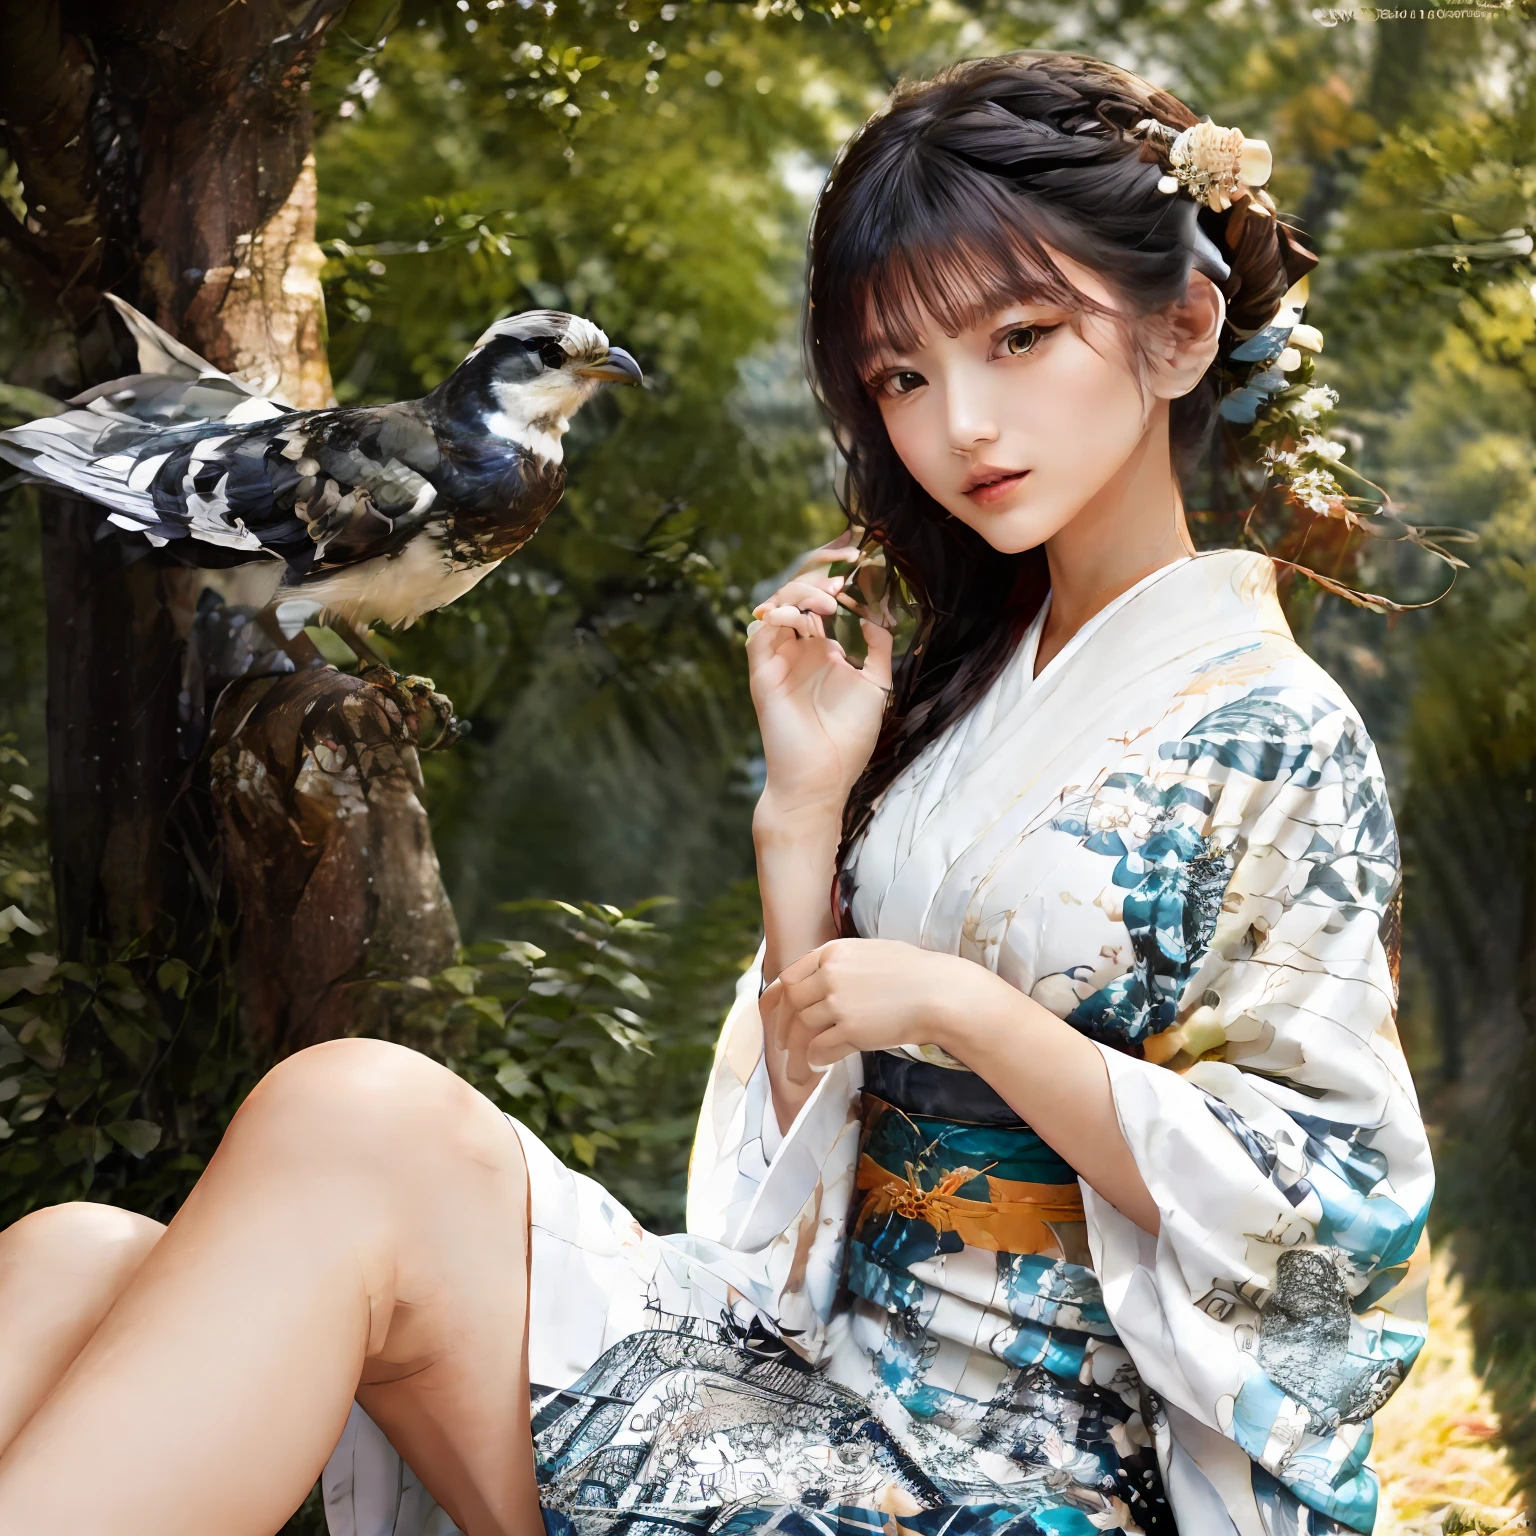 照相写实主义、在夏天, 那个树々在阳光的映衬下、透明时尚杂志图片、身穿带有鸟蛇图案的白色超薄和服的日本年轻女子, 描述一名日本女孩穿着带有葛饰北斋的鸟和木图案的和服，外面套着由蕾丝或网眼织物制成的半透明连衣裙. 阳光透过和服的布料照射进来, 它创造了动态的阴影和图案，似乎蜿蜒在女孩的身体和腿上, 反思她内心的渴望和激情 . 这是、鼓励实验，将时尚打造为一个互动系统